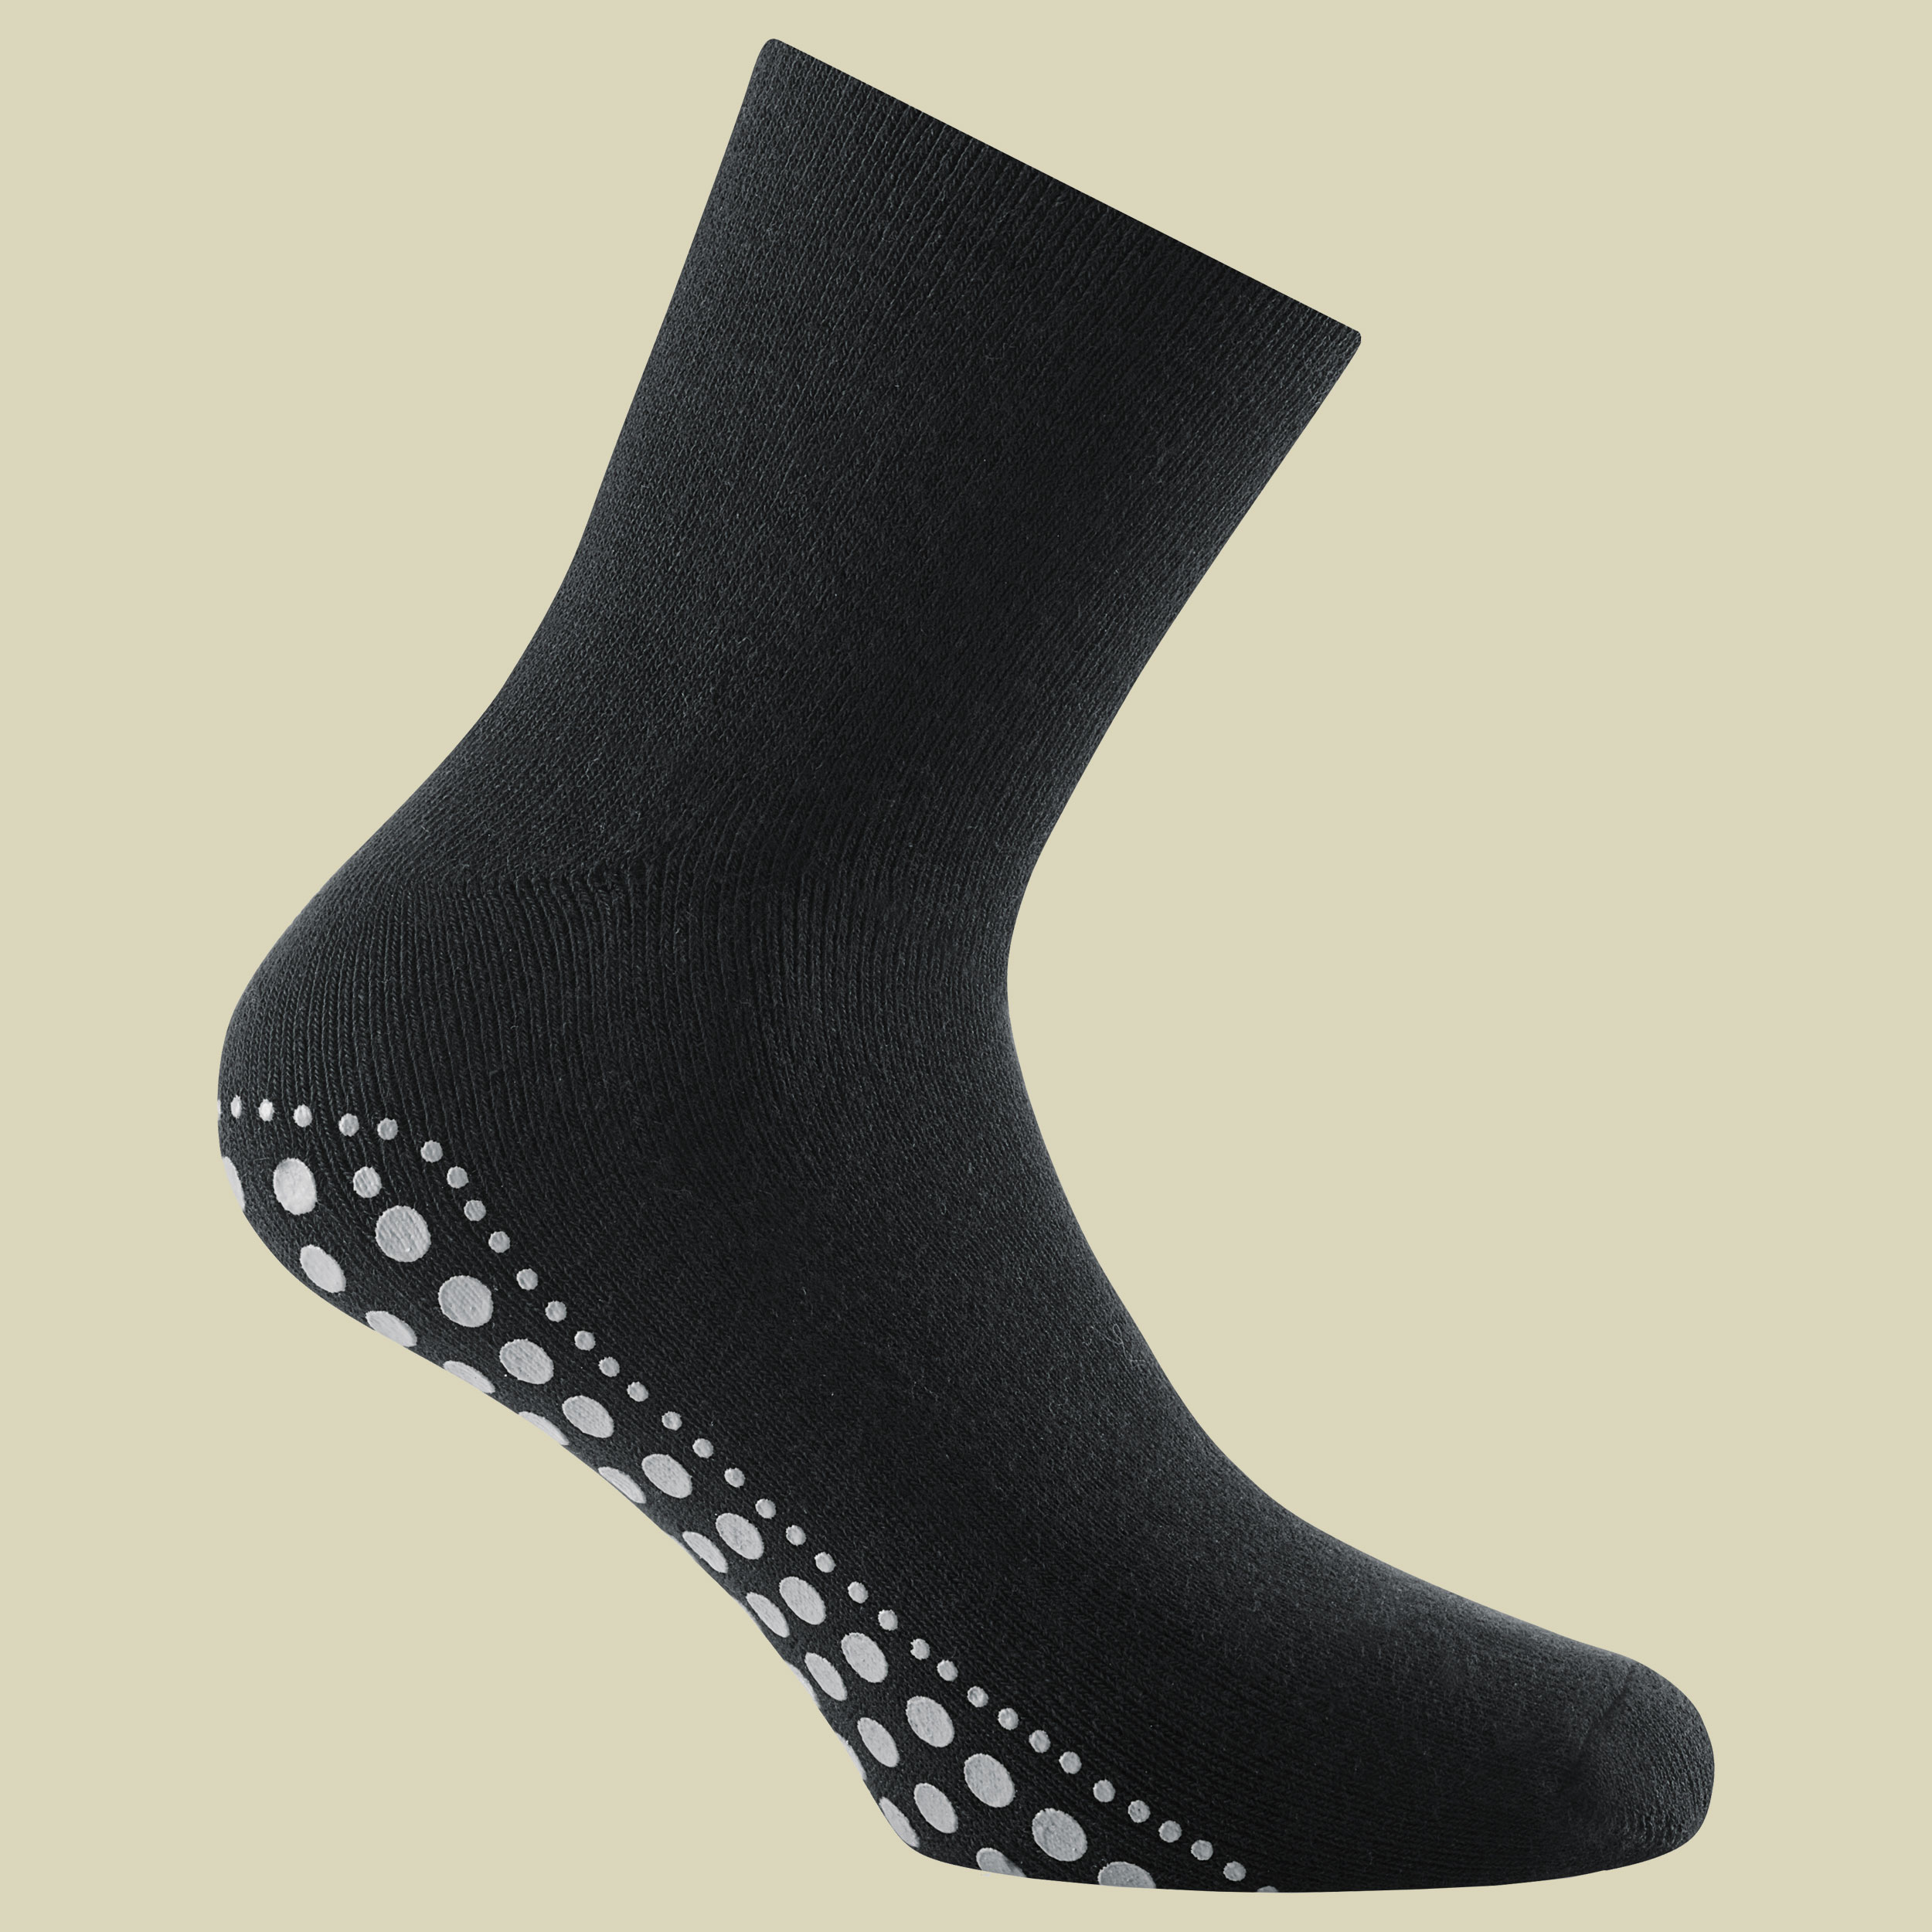 Home Socks Größe 39-42 Farbe black